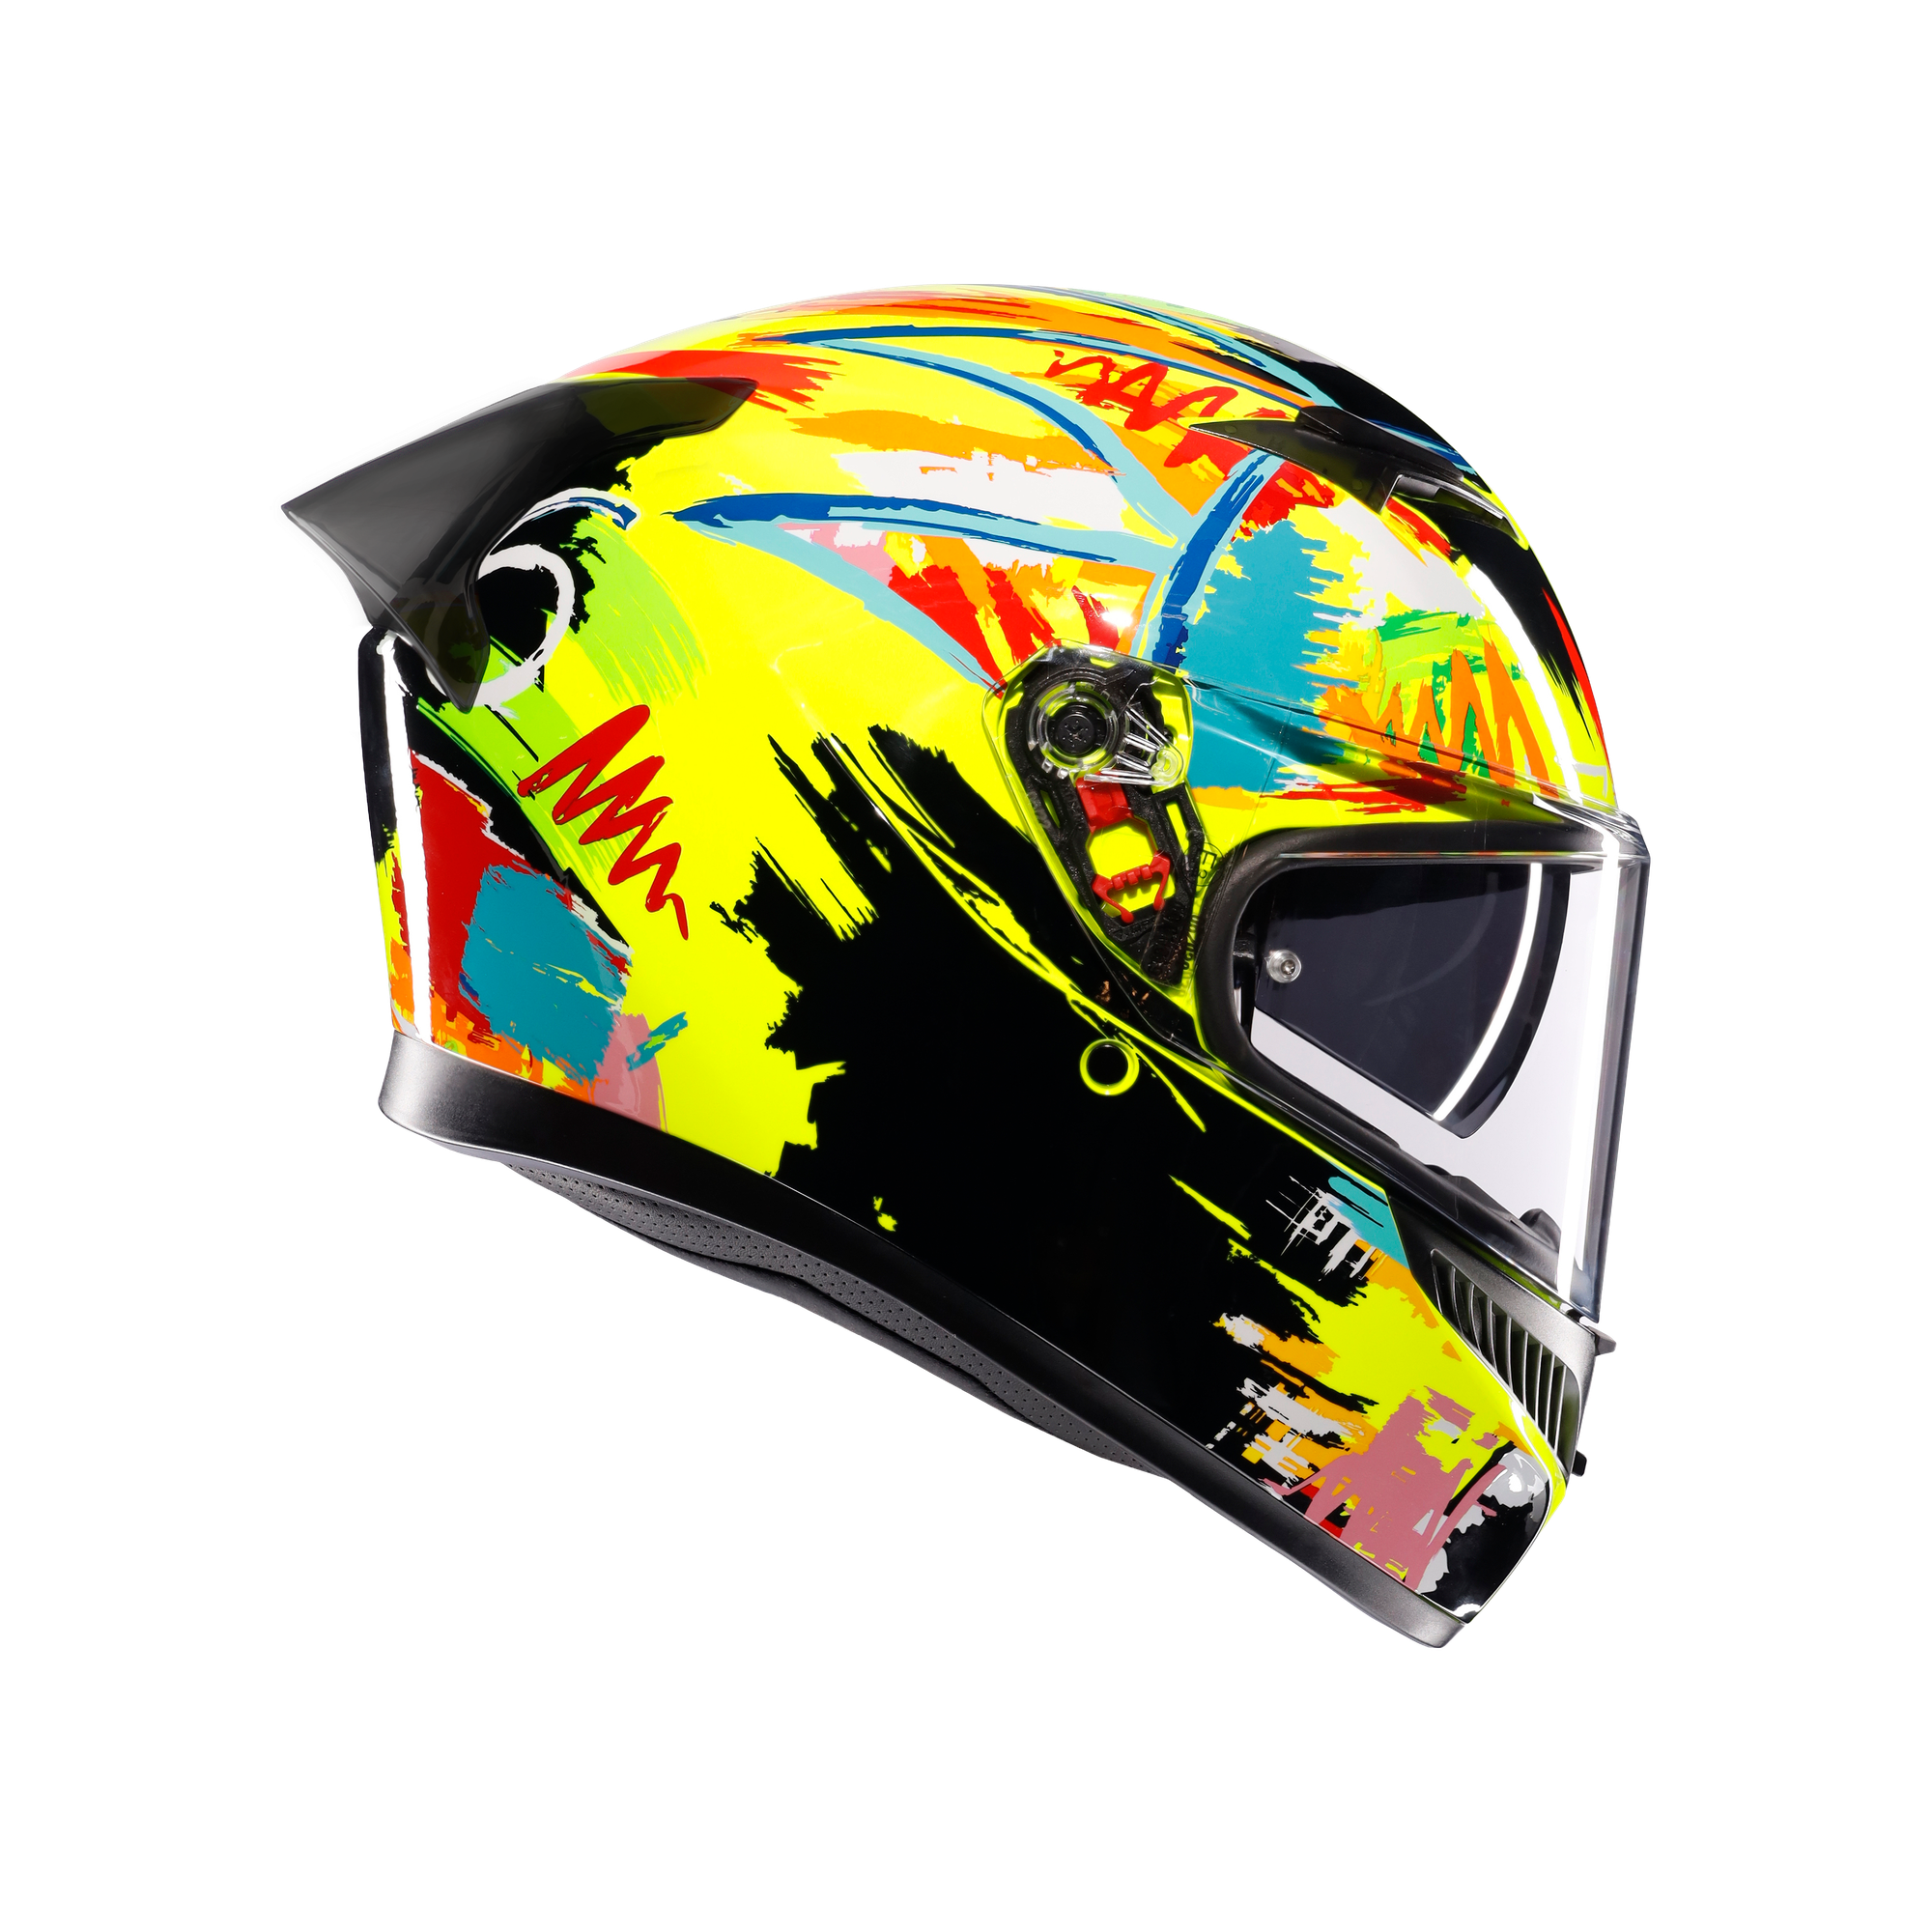 フルフェイスヘルメット | K3 AGV JIST MPLK Asian Fit 003-ROSSI WINTER TEST 2019 SG認証